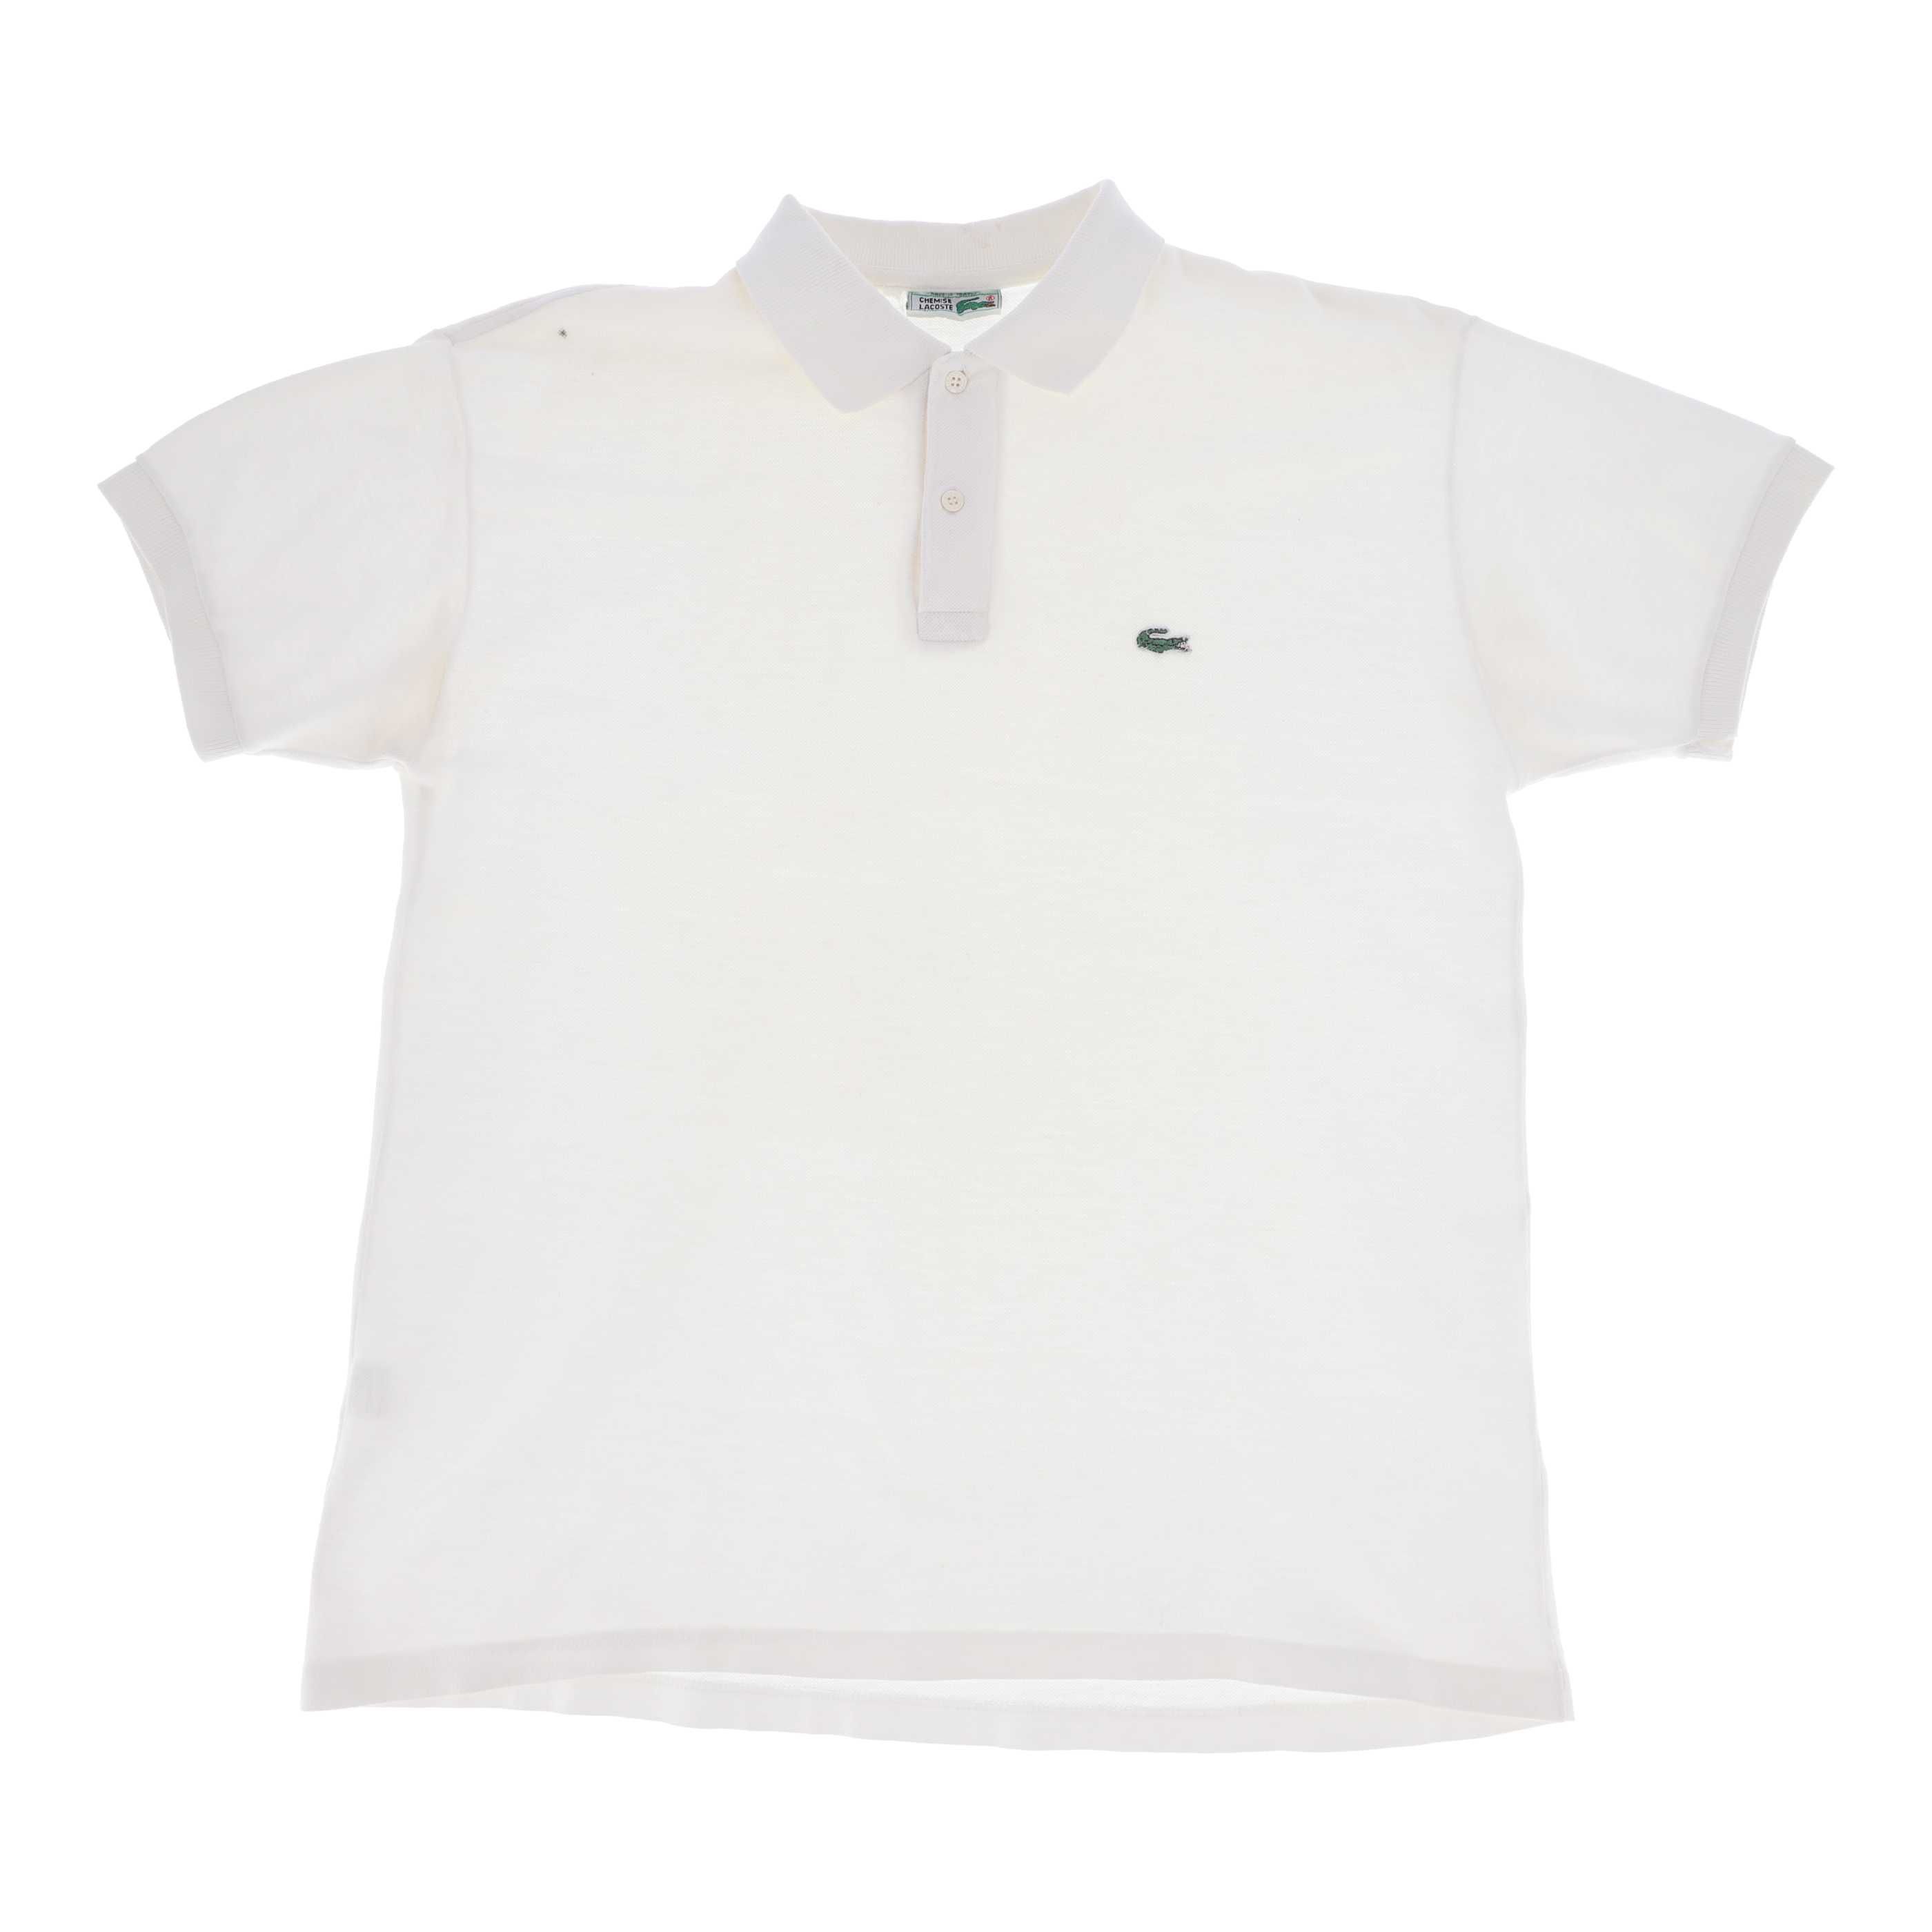 Biała koszulka polo marki Lacoste, rozmiar 42 - używana